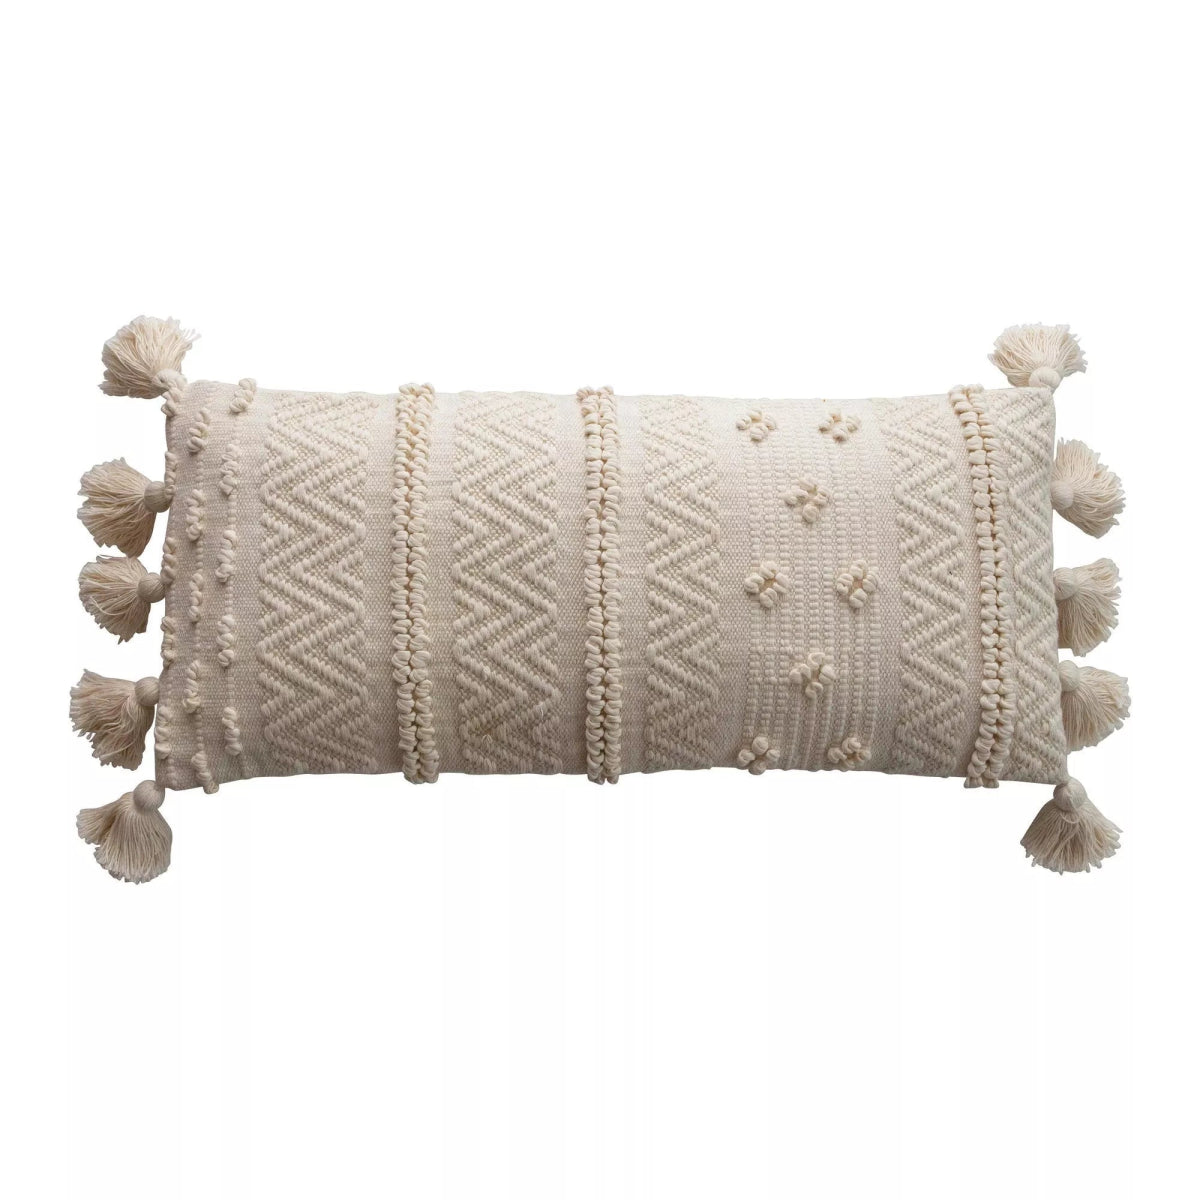 Cotton Lumbar Pillow With Pom Poms